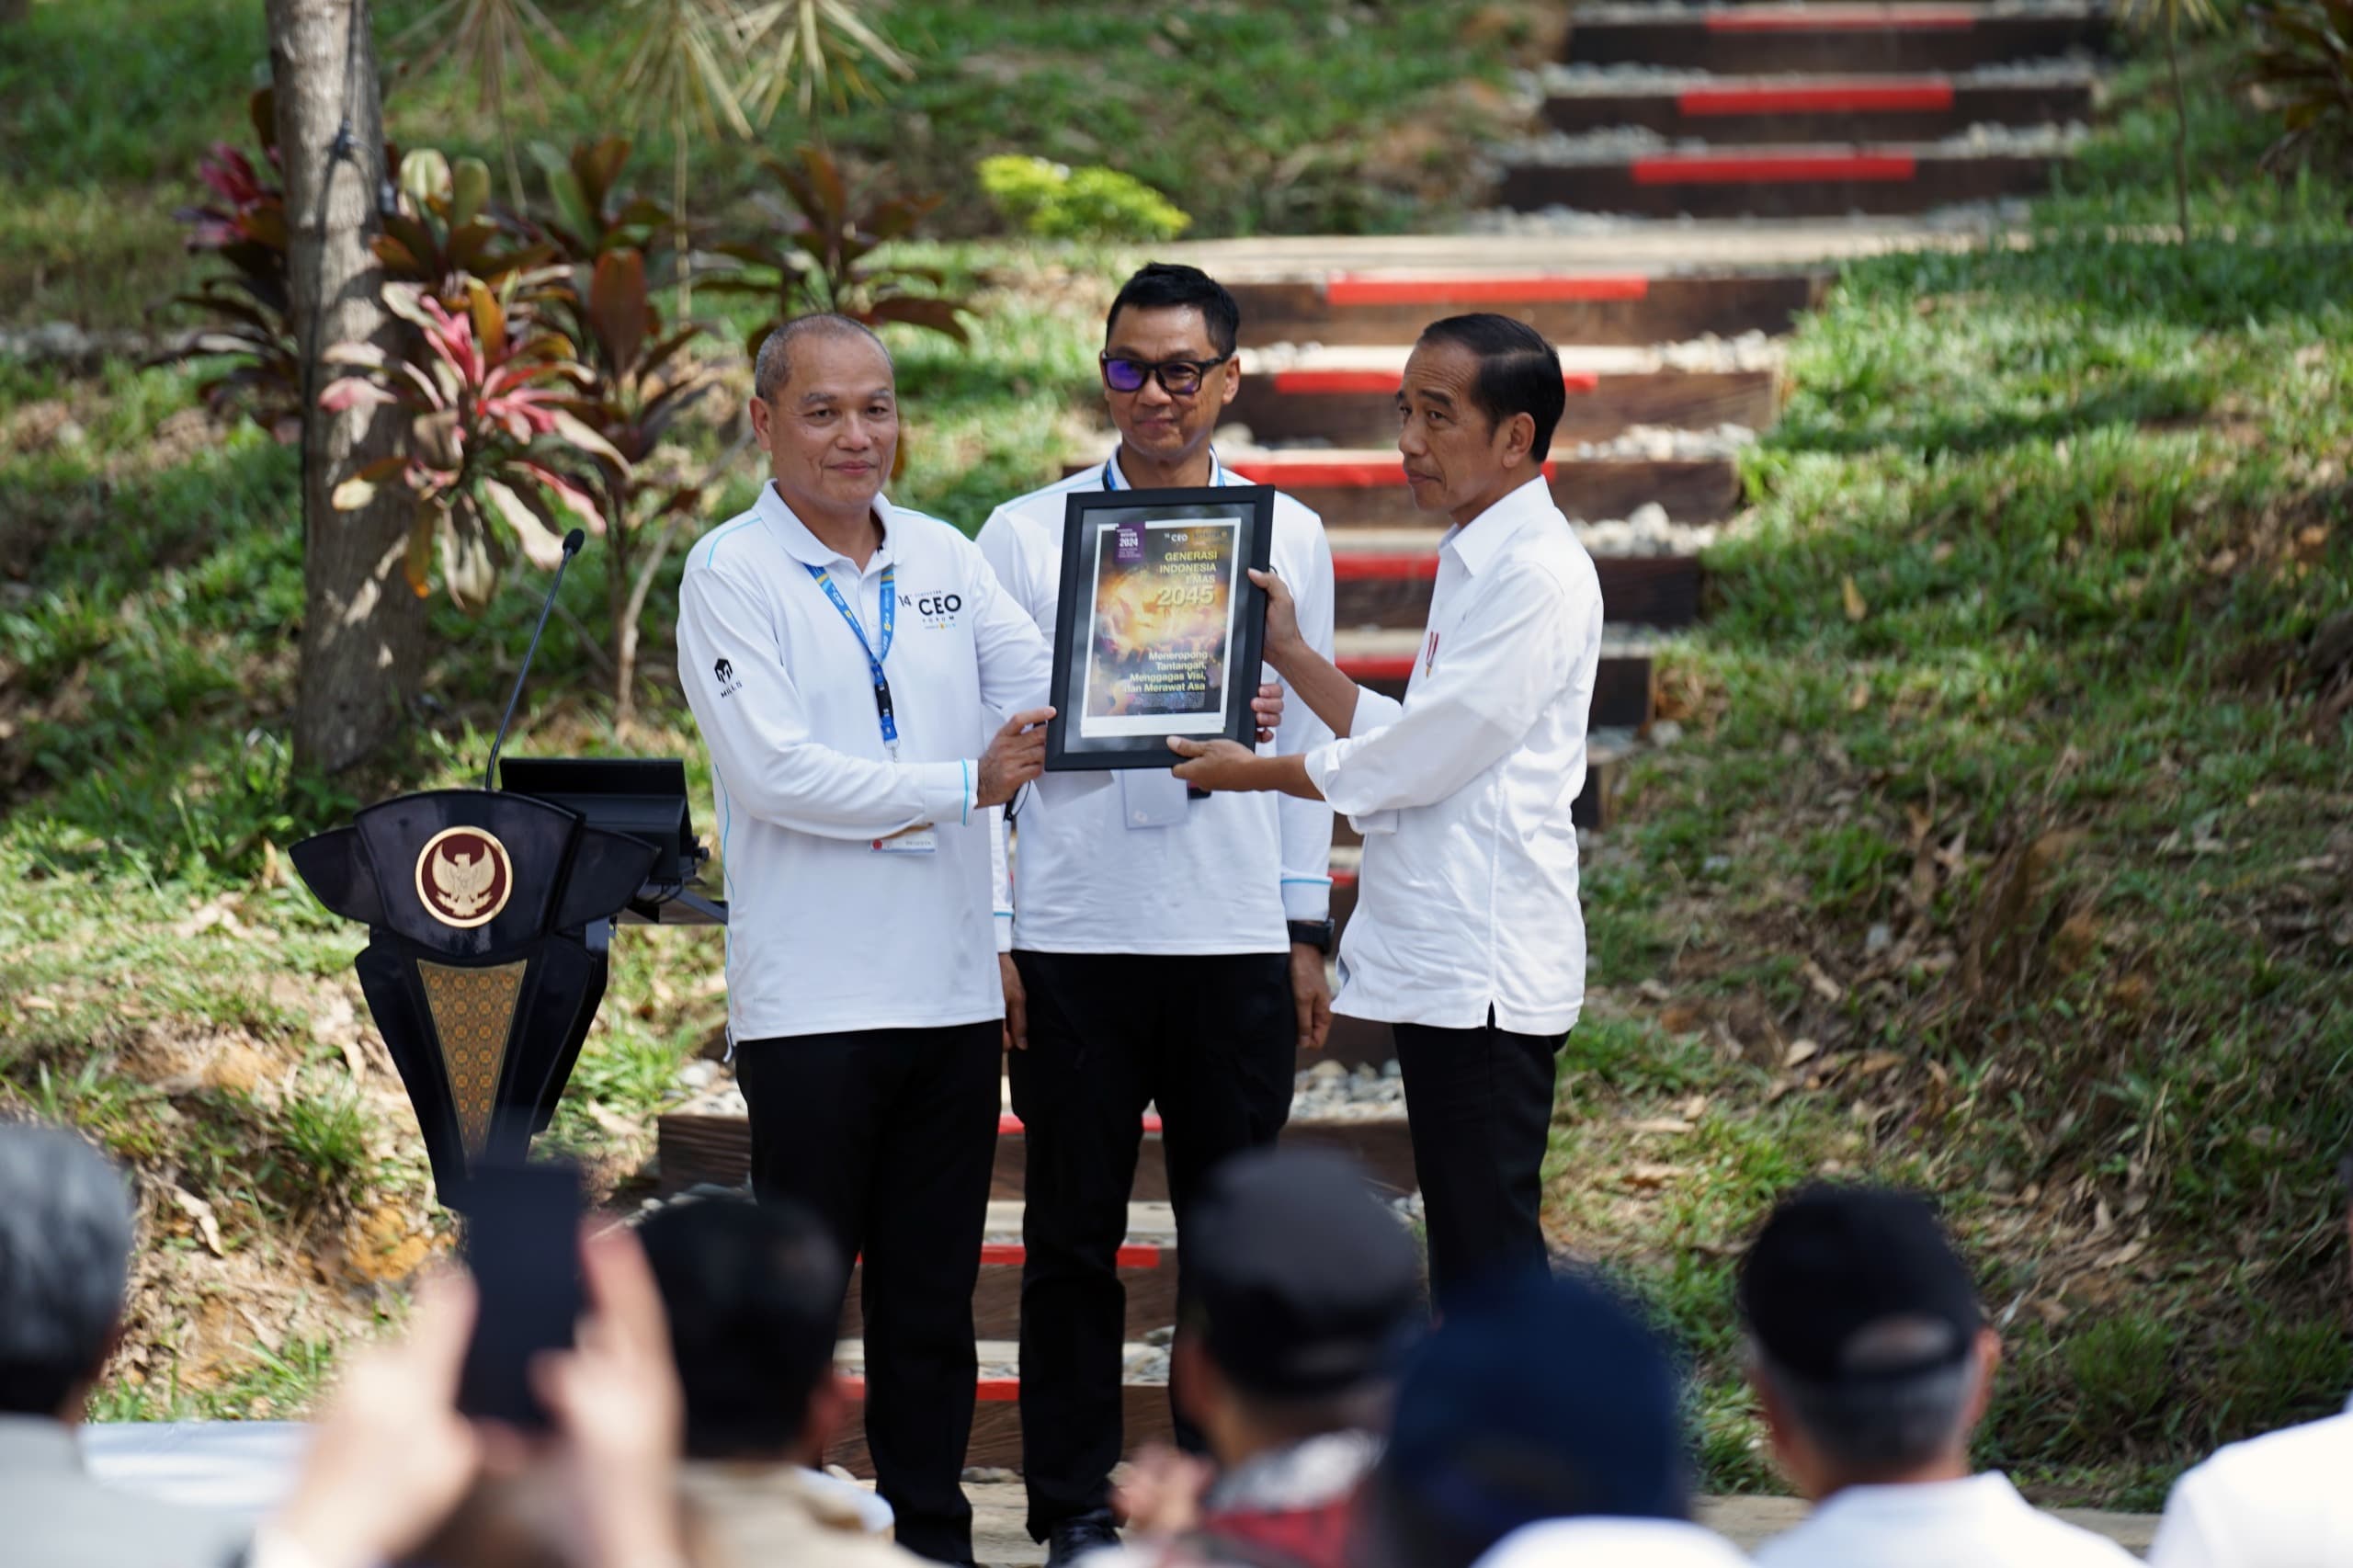 Presiden Republik Indonesia Joko Widodo (kanan) menerima _White paper_ dari  CEO Kompas Gramedia Lilik Oetama (kiri) yang didampingi oleh Direktur Utama PLN Darmawan Prasodjo (tengah), saat rangkaian acara Kompas100 CEO Forum, di Kawasan Glamping, Ibu Kot